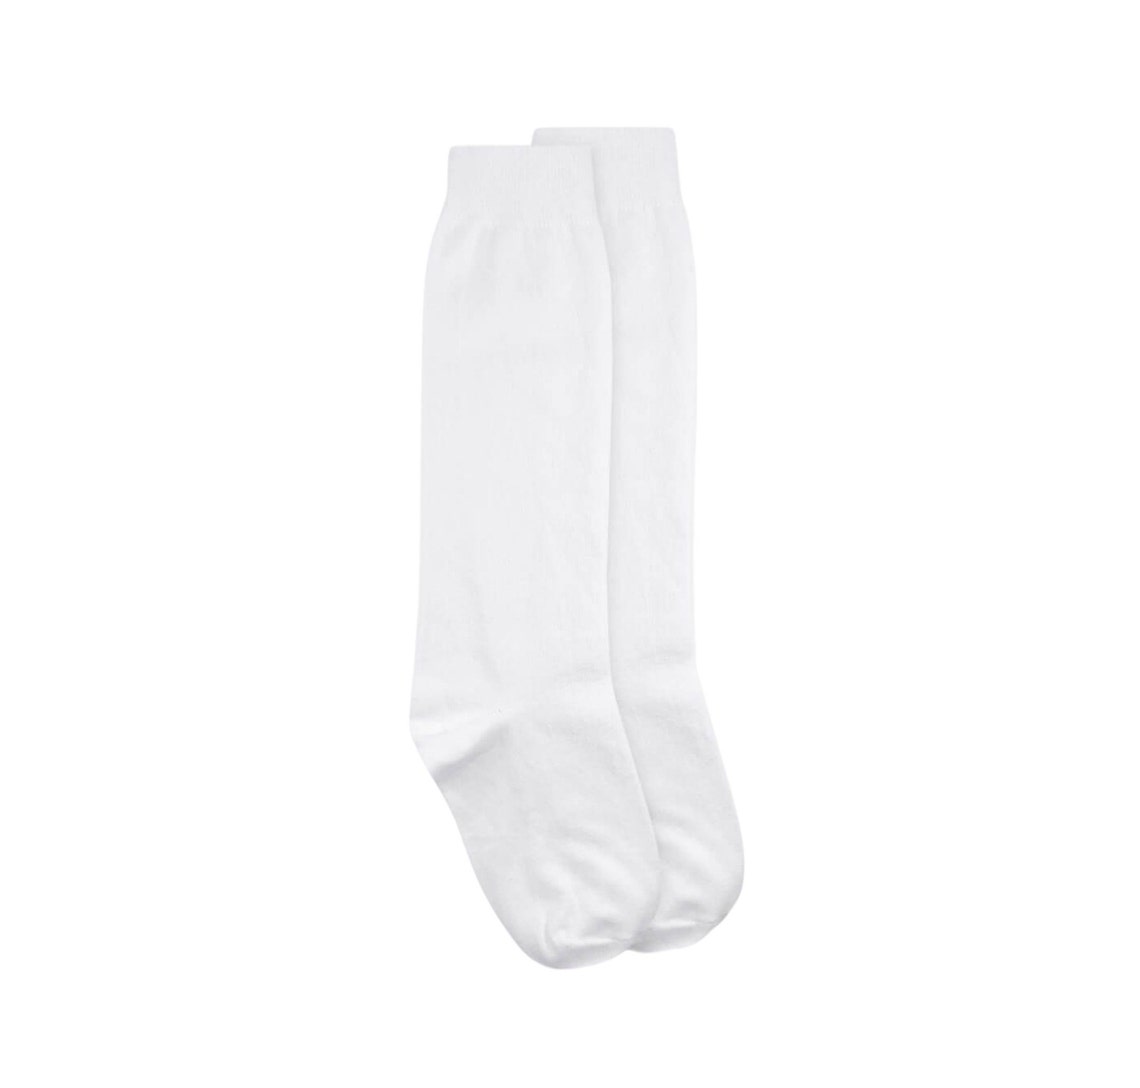 White Uniform Knee Highs School Uniform Socks White Knee - Etsy